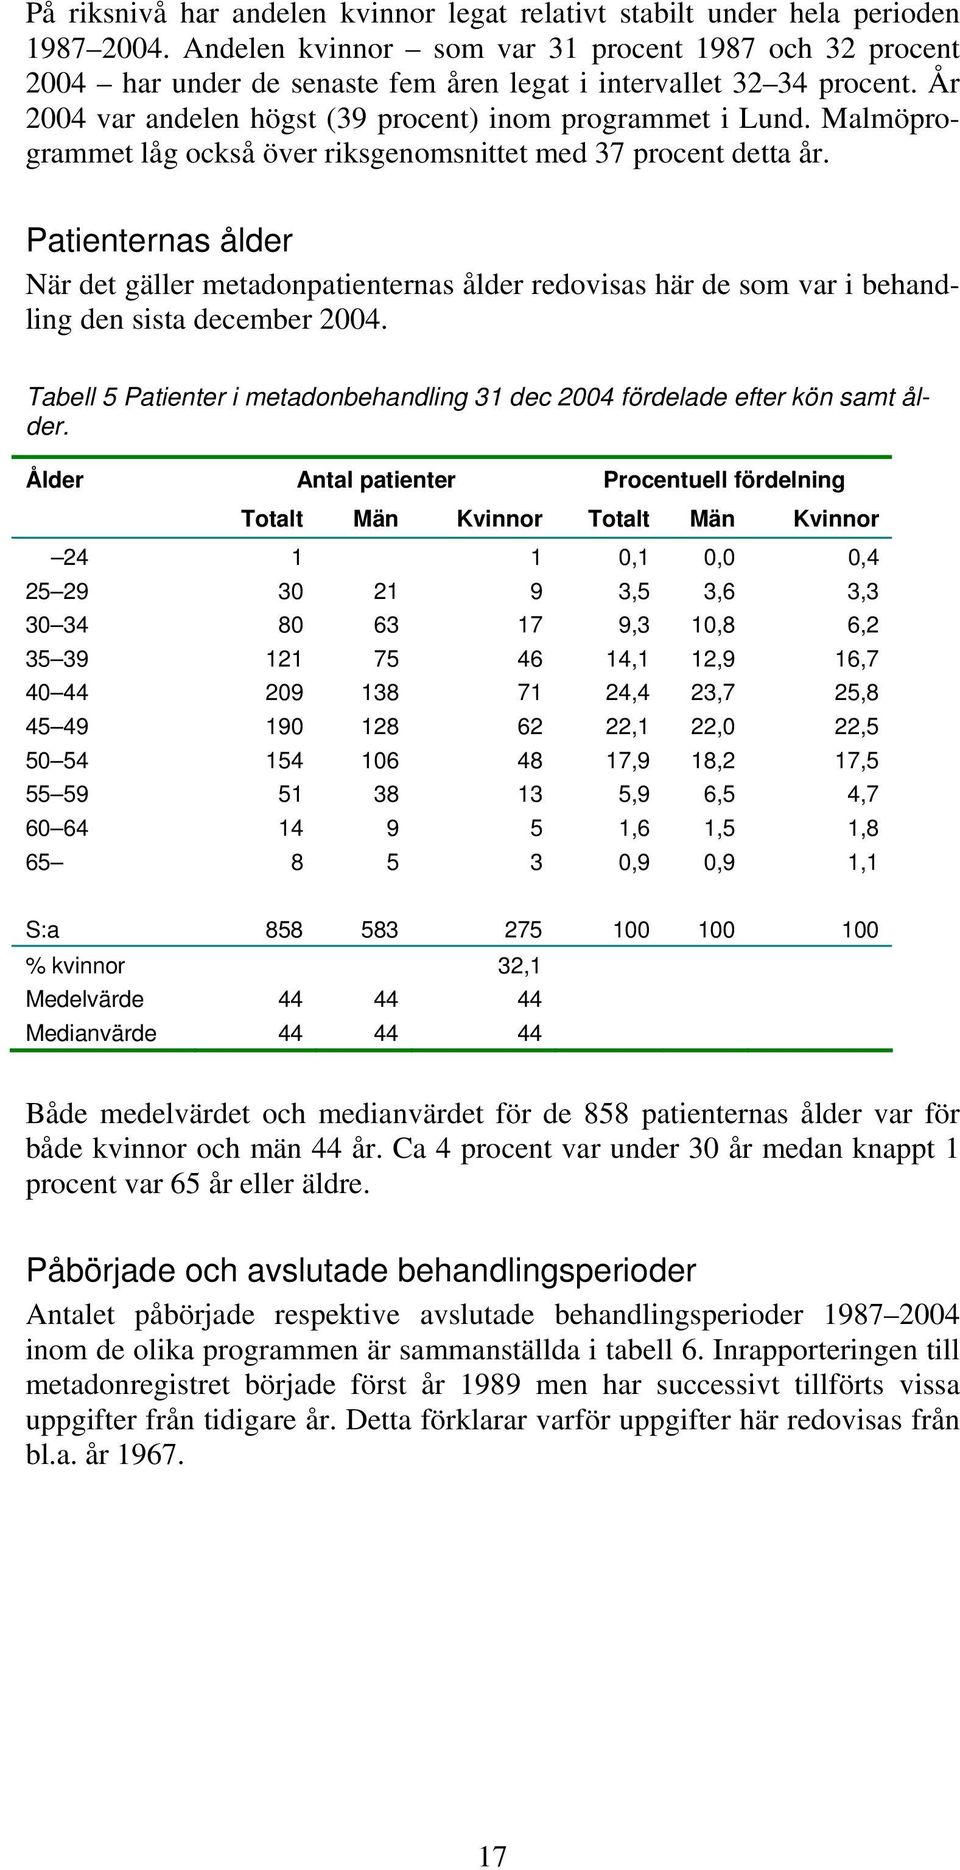 Malmöprogrammet låg också över riksgenomsnittet med 37 procent detta år. Patienternas ålder När det gäller metadonpatienternas ålder redovisas här de som var i behandling den sista december 2004.